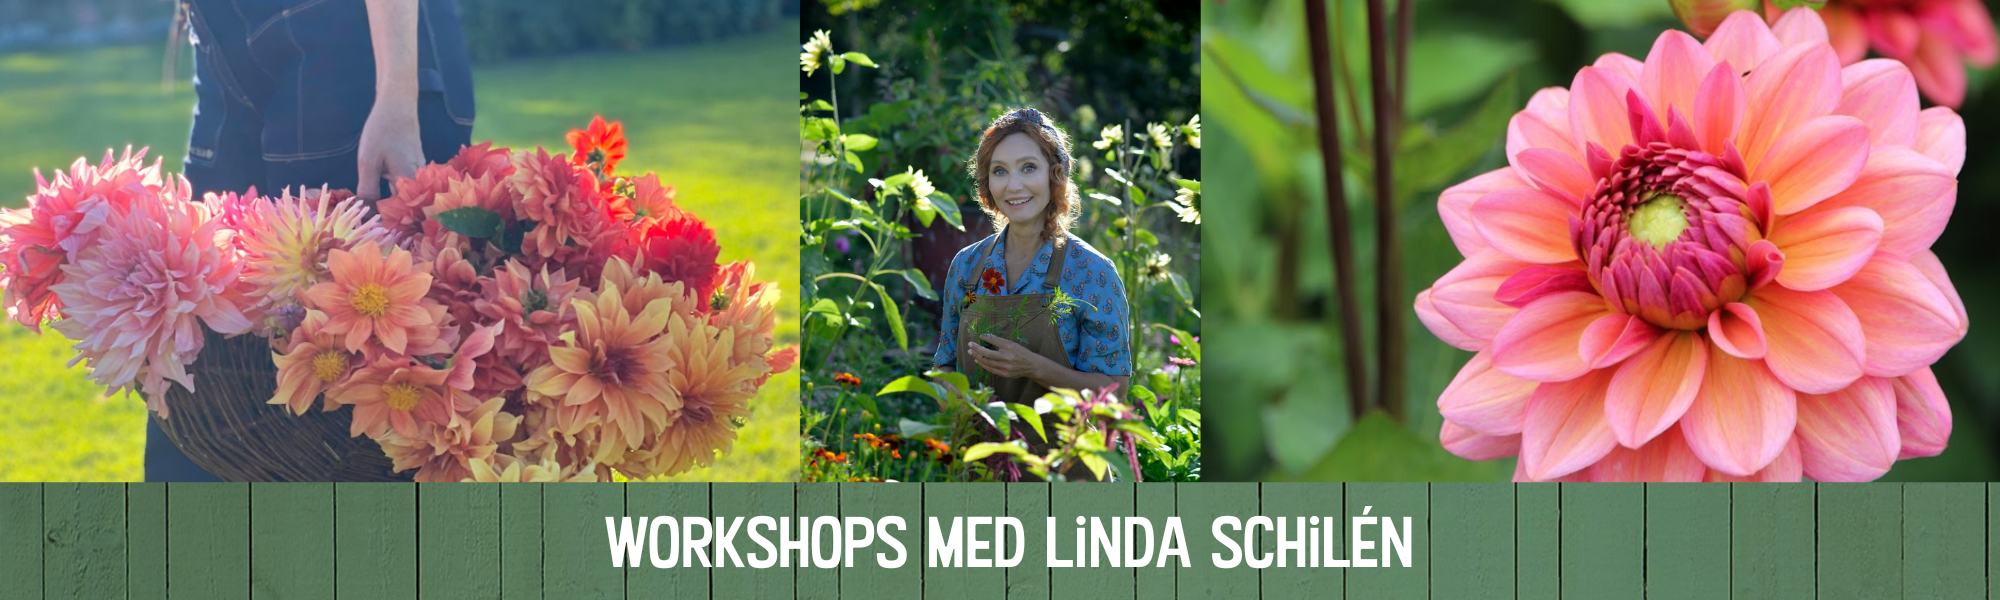 Workshops med Linda Schilén